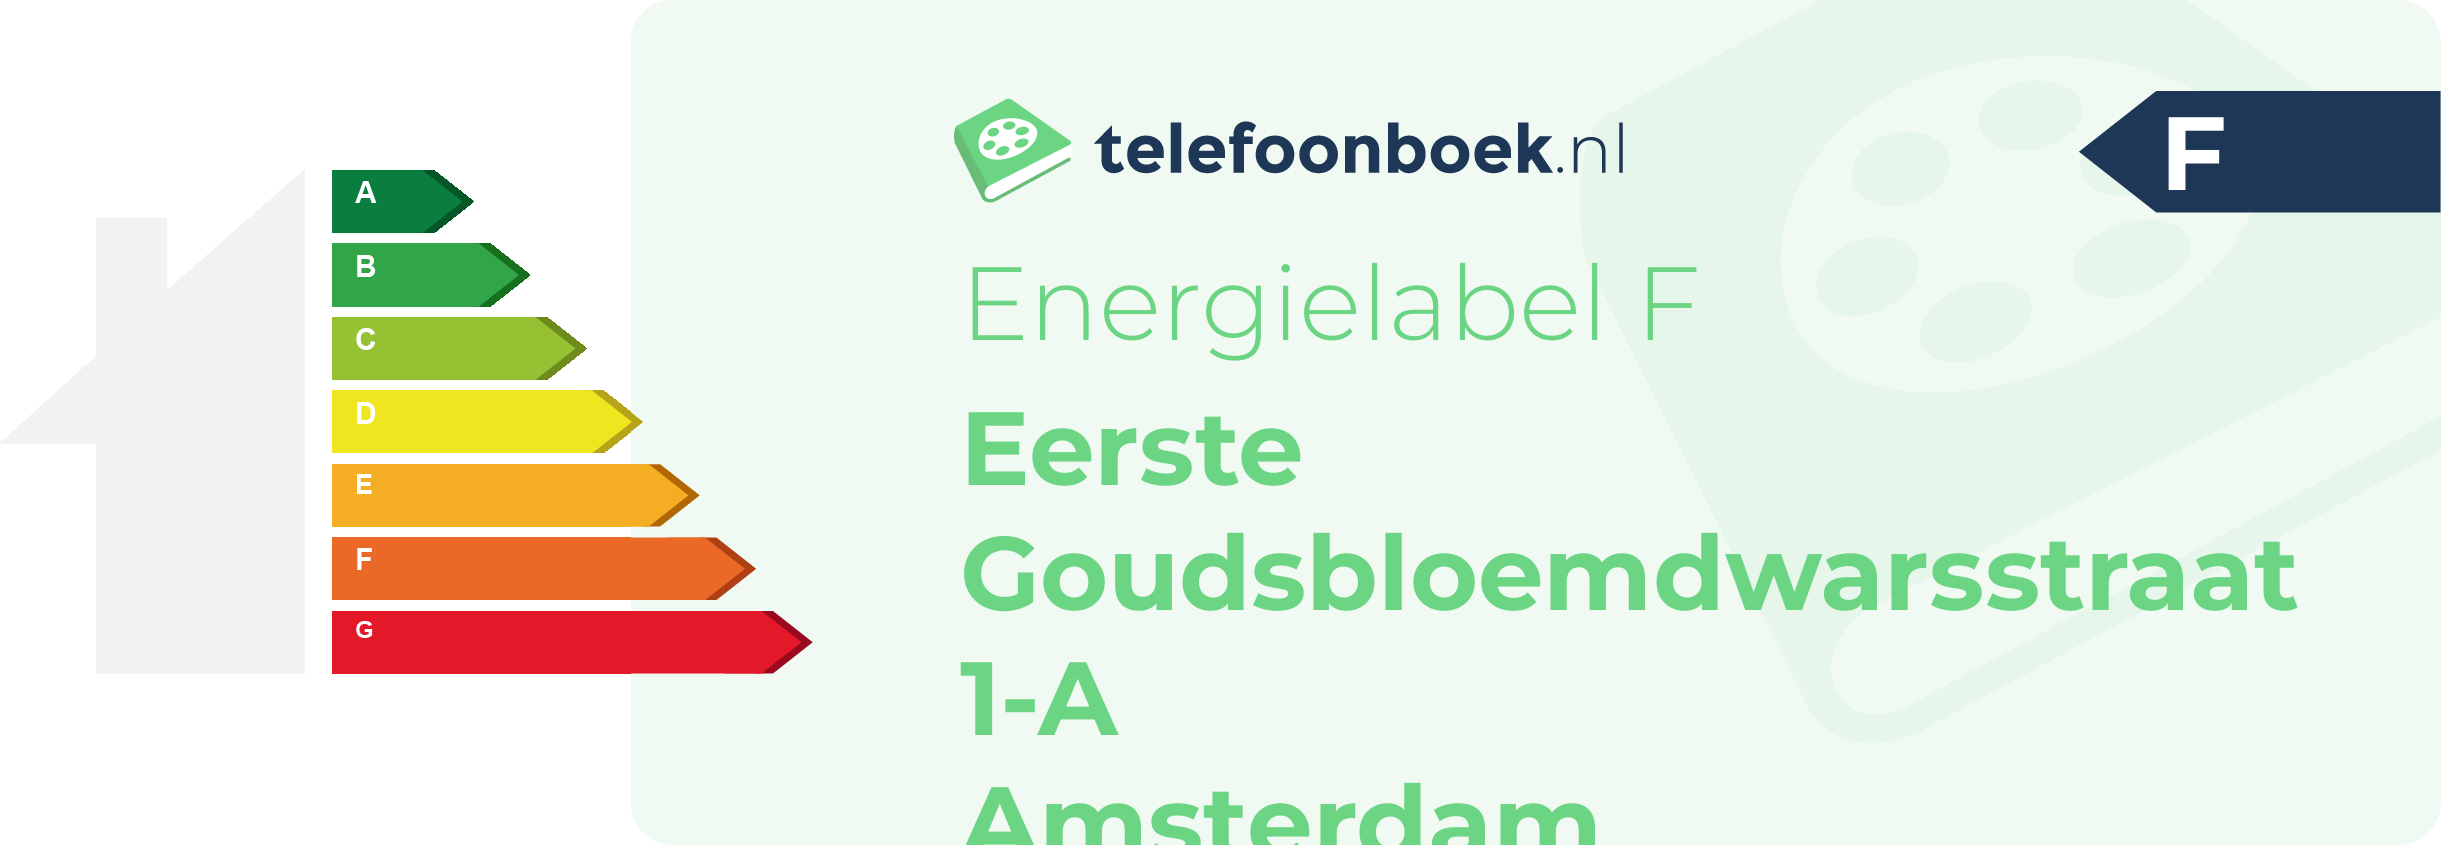 Energielabel Eerste Goudsbloemdwarsstraat 1-A Amsterdam